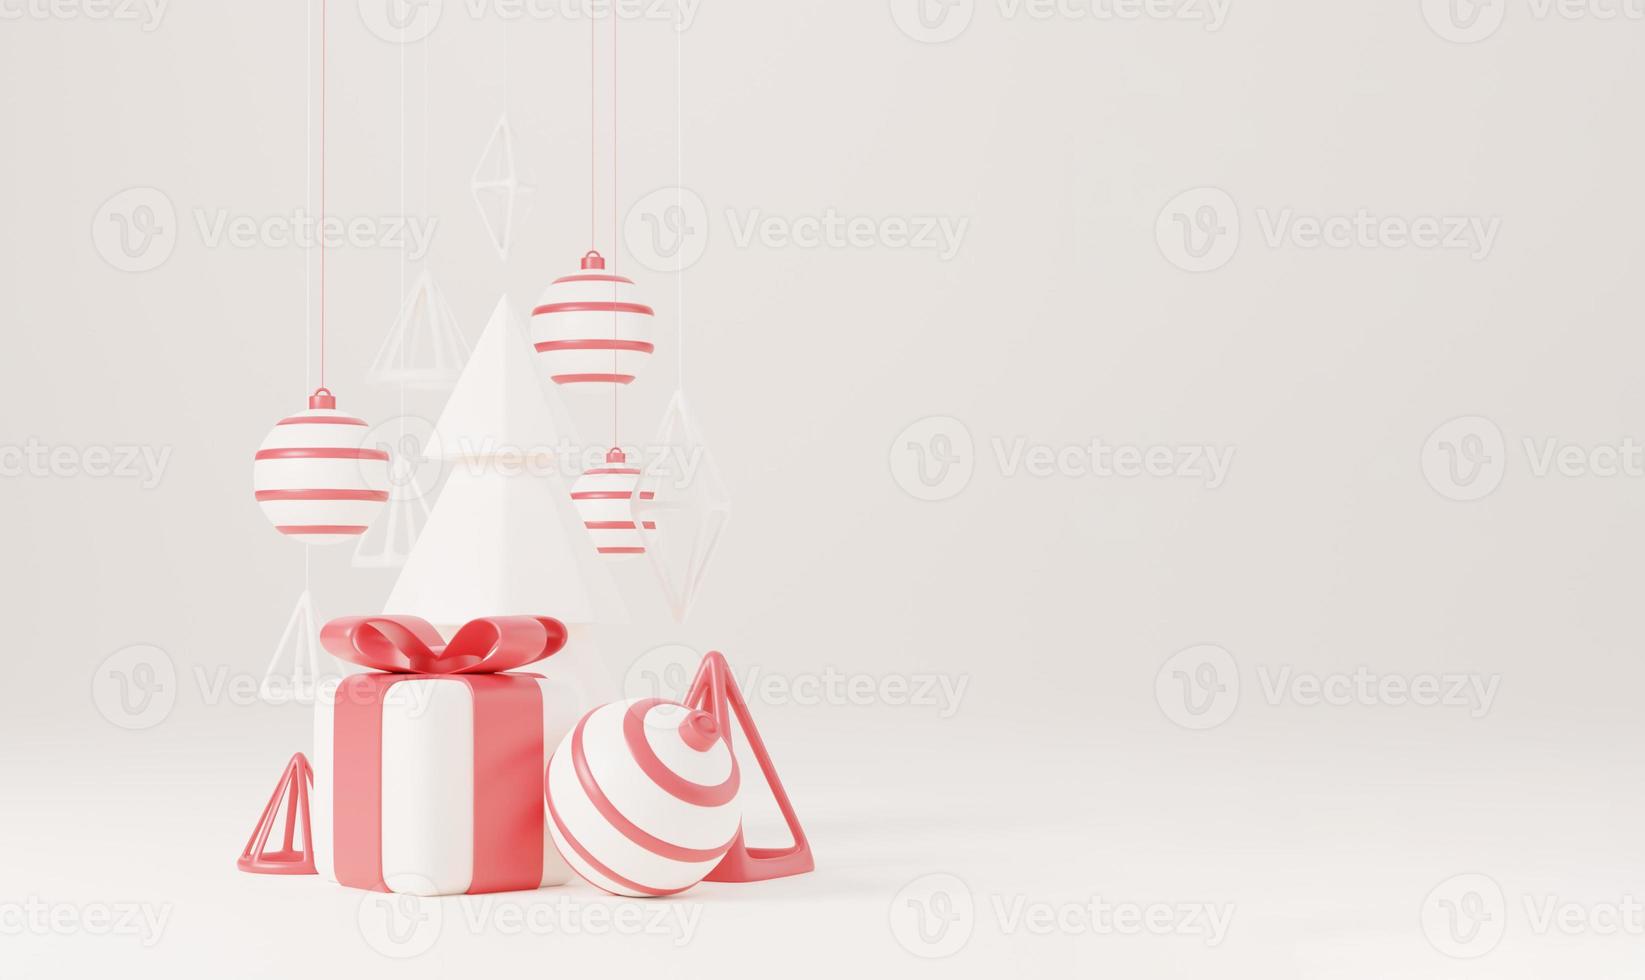 Árbol de Navidad 3D con caja de regalo roja y fondo blanco de bola, cartel de Navidad, banner web. Ilustración de render 3d estilo minimalista concepto de navidad y año nuevo foto